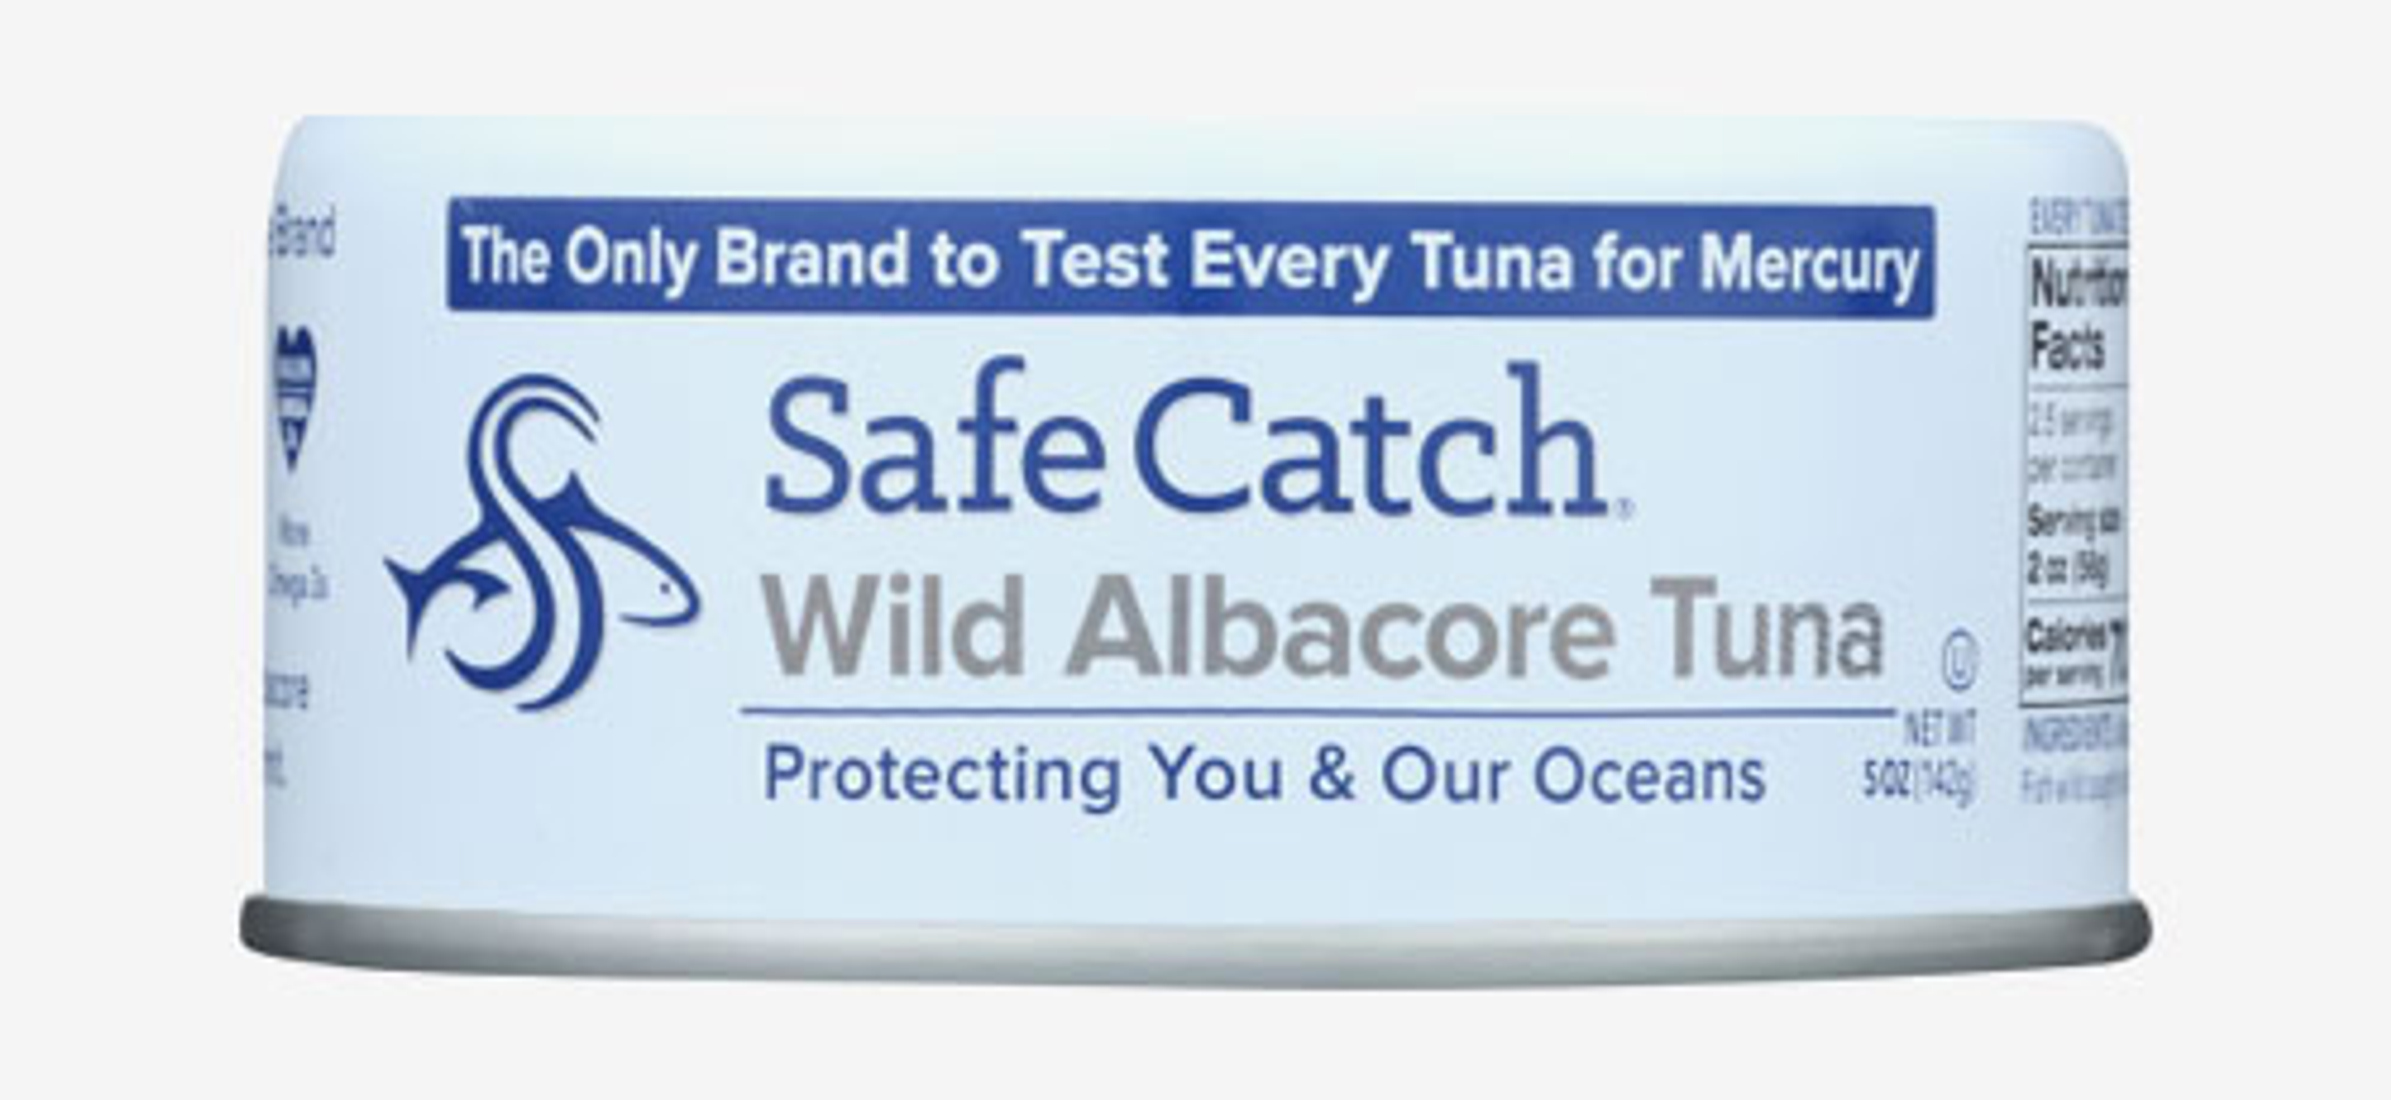 Safe Catch Tuna, Albacore, Wild - 5 oz